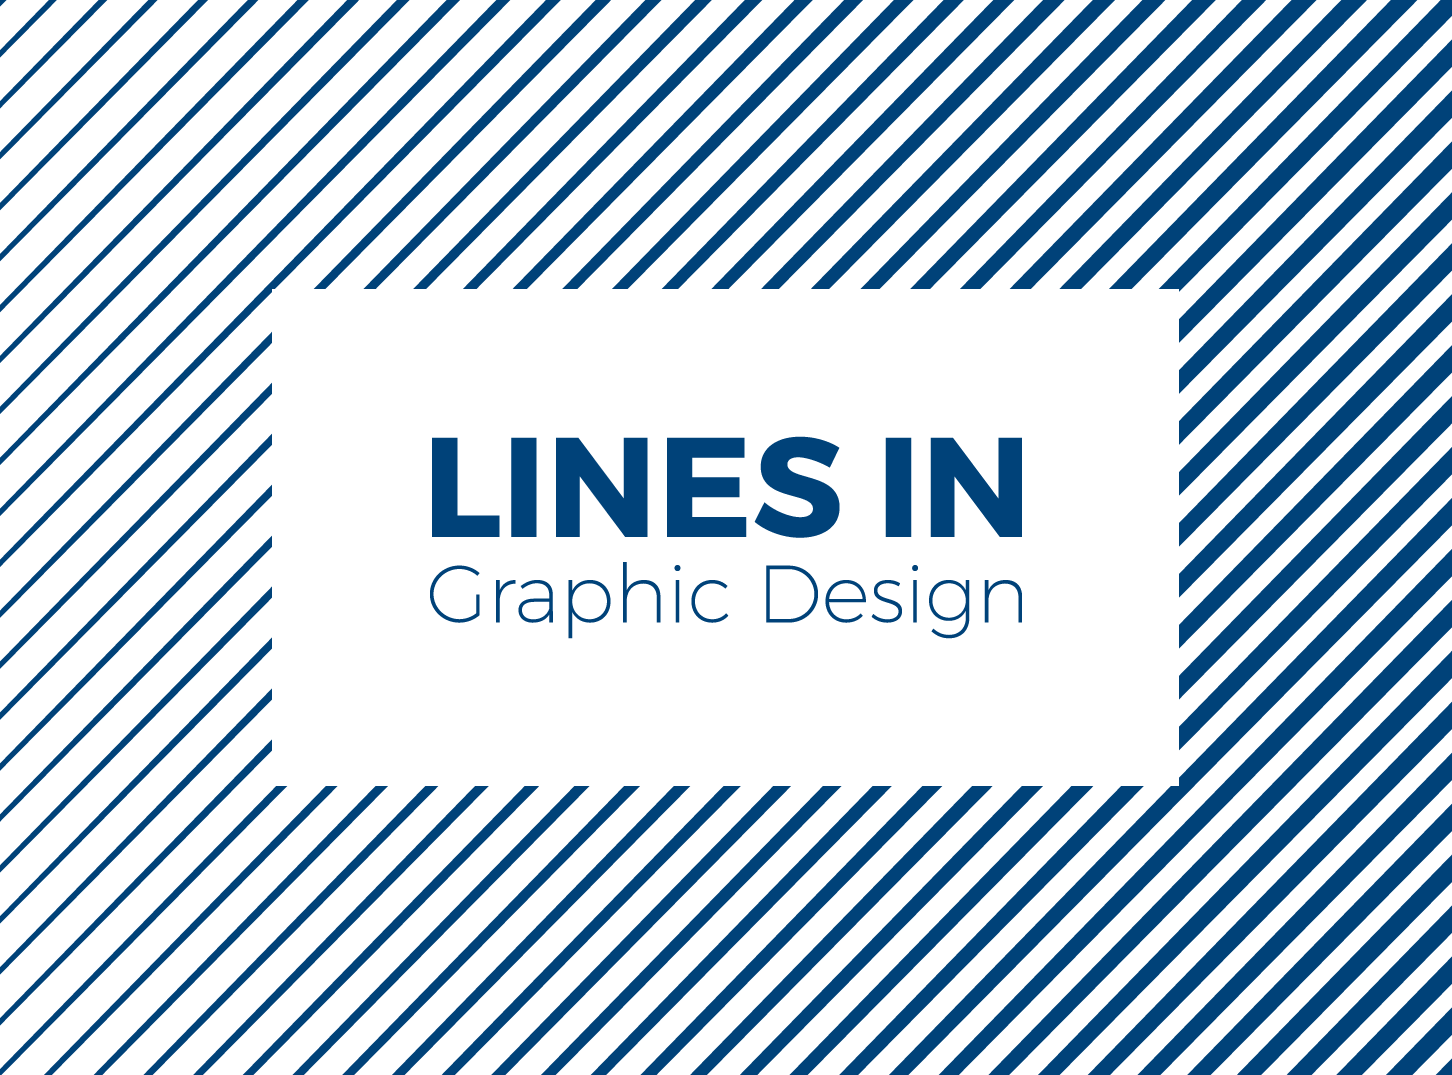 graphic design lines